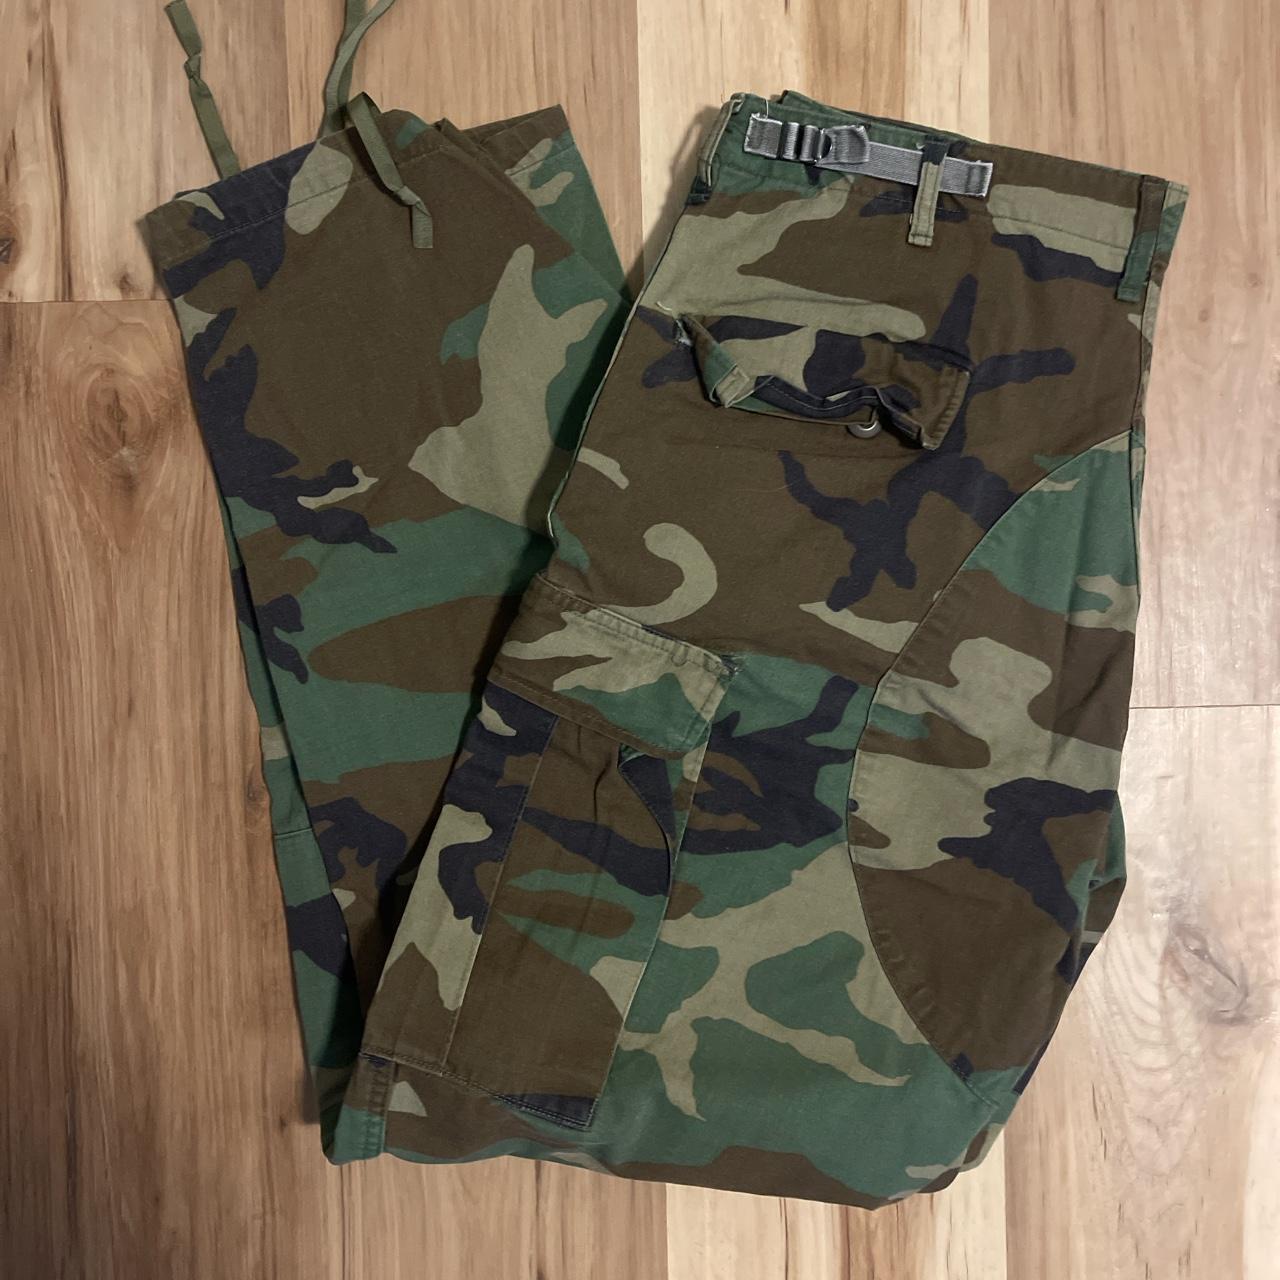 Authentic U.S Army Pants Size:... - Depop